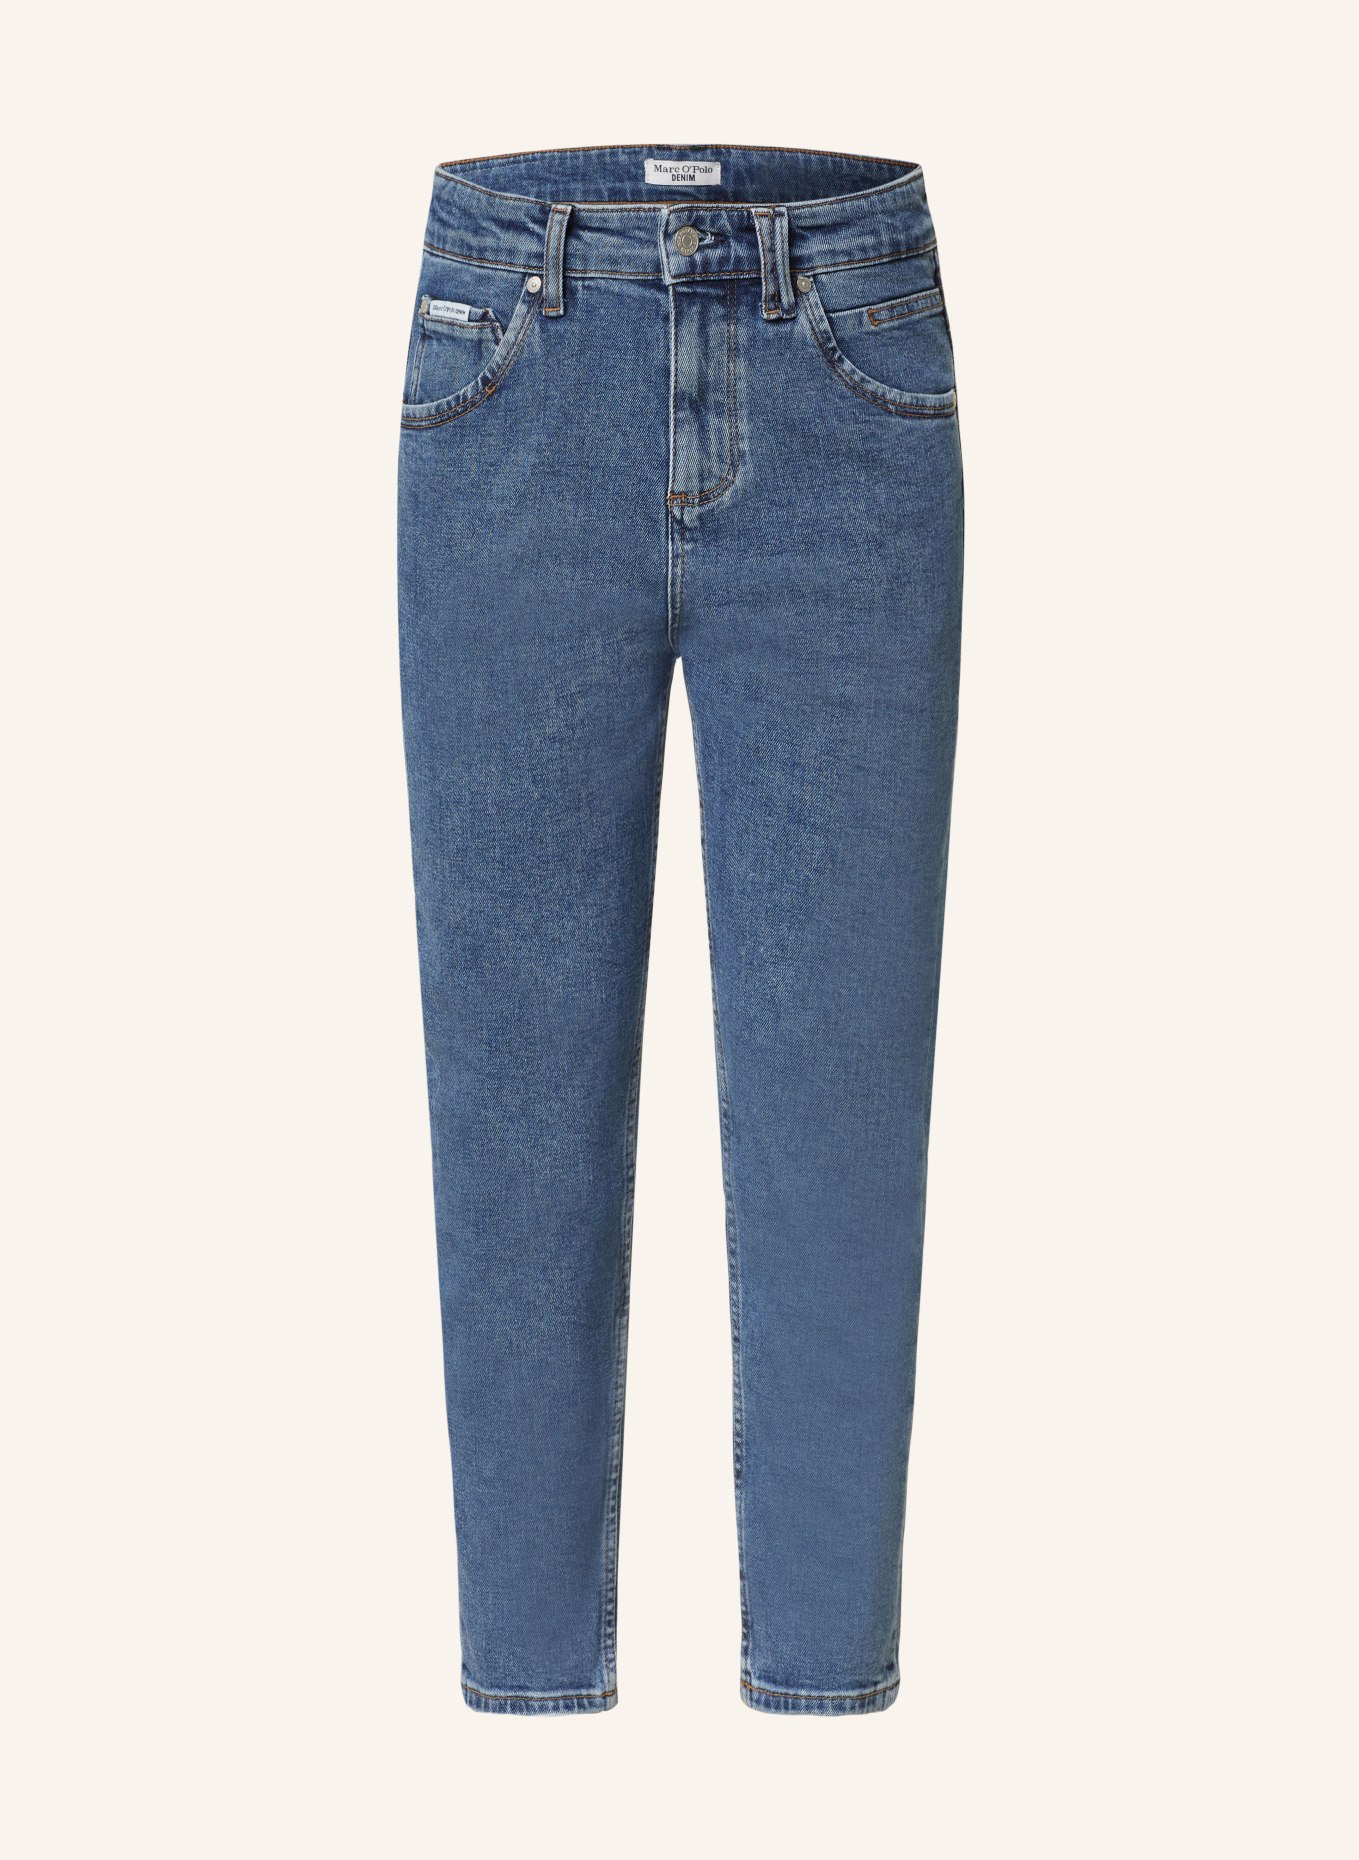 Marc O'Polo DENIM Jeans, Farbe: P37 multi/ authentic dark blue (Bild 1)